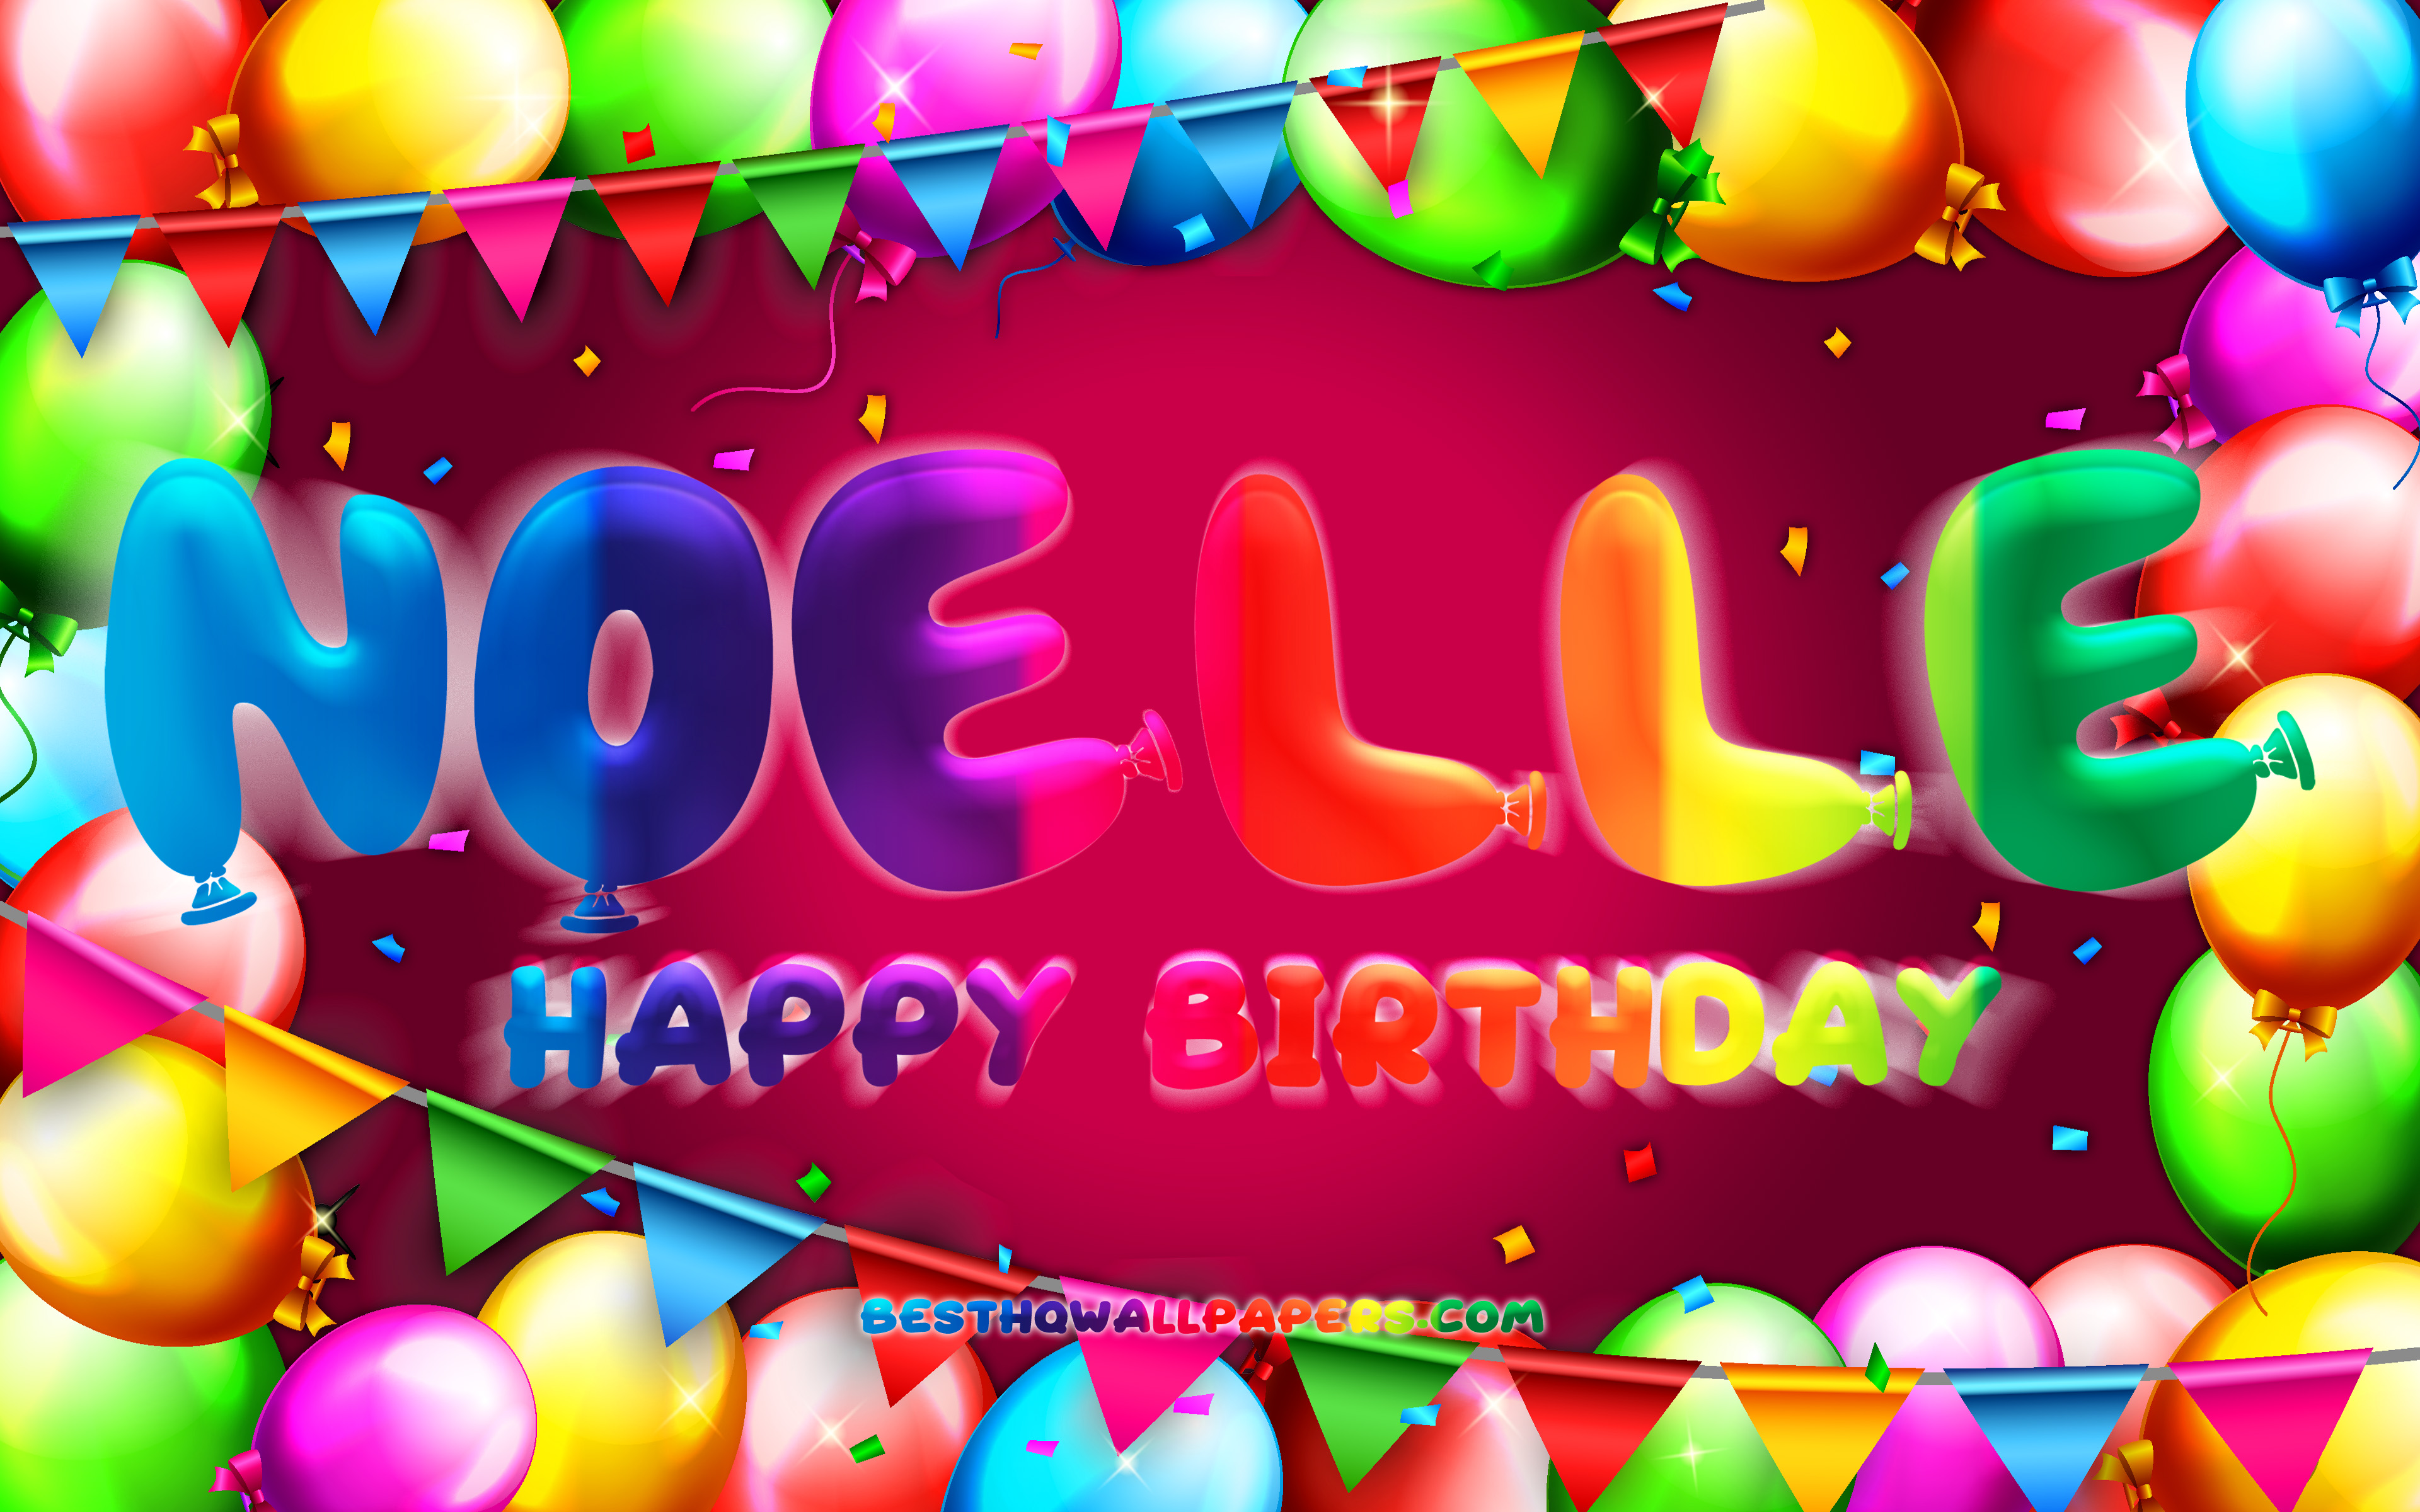 Happy Birthday Noelle - Hôm nay là sinh nhật của Noelle! Hãy cùng chúc mừng và gửi đến cô ấy những lời chúc tốt đẹp nhất. Hình liên quan chắc chắn sẽ mang đến những cảm xúc đầy ấm áp và niềm vui cho ngày sinh nhật của cô ấy.